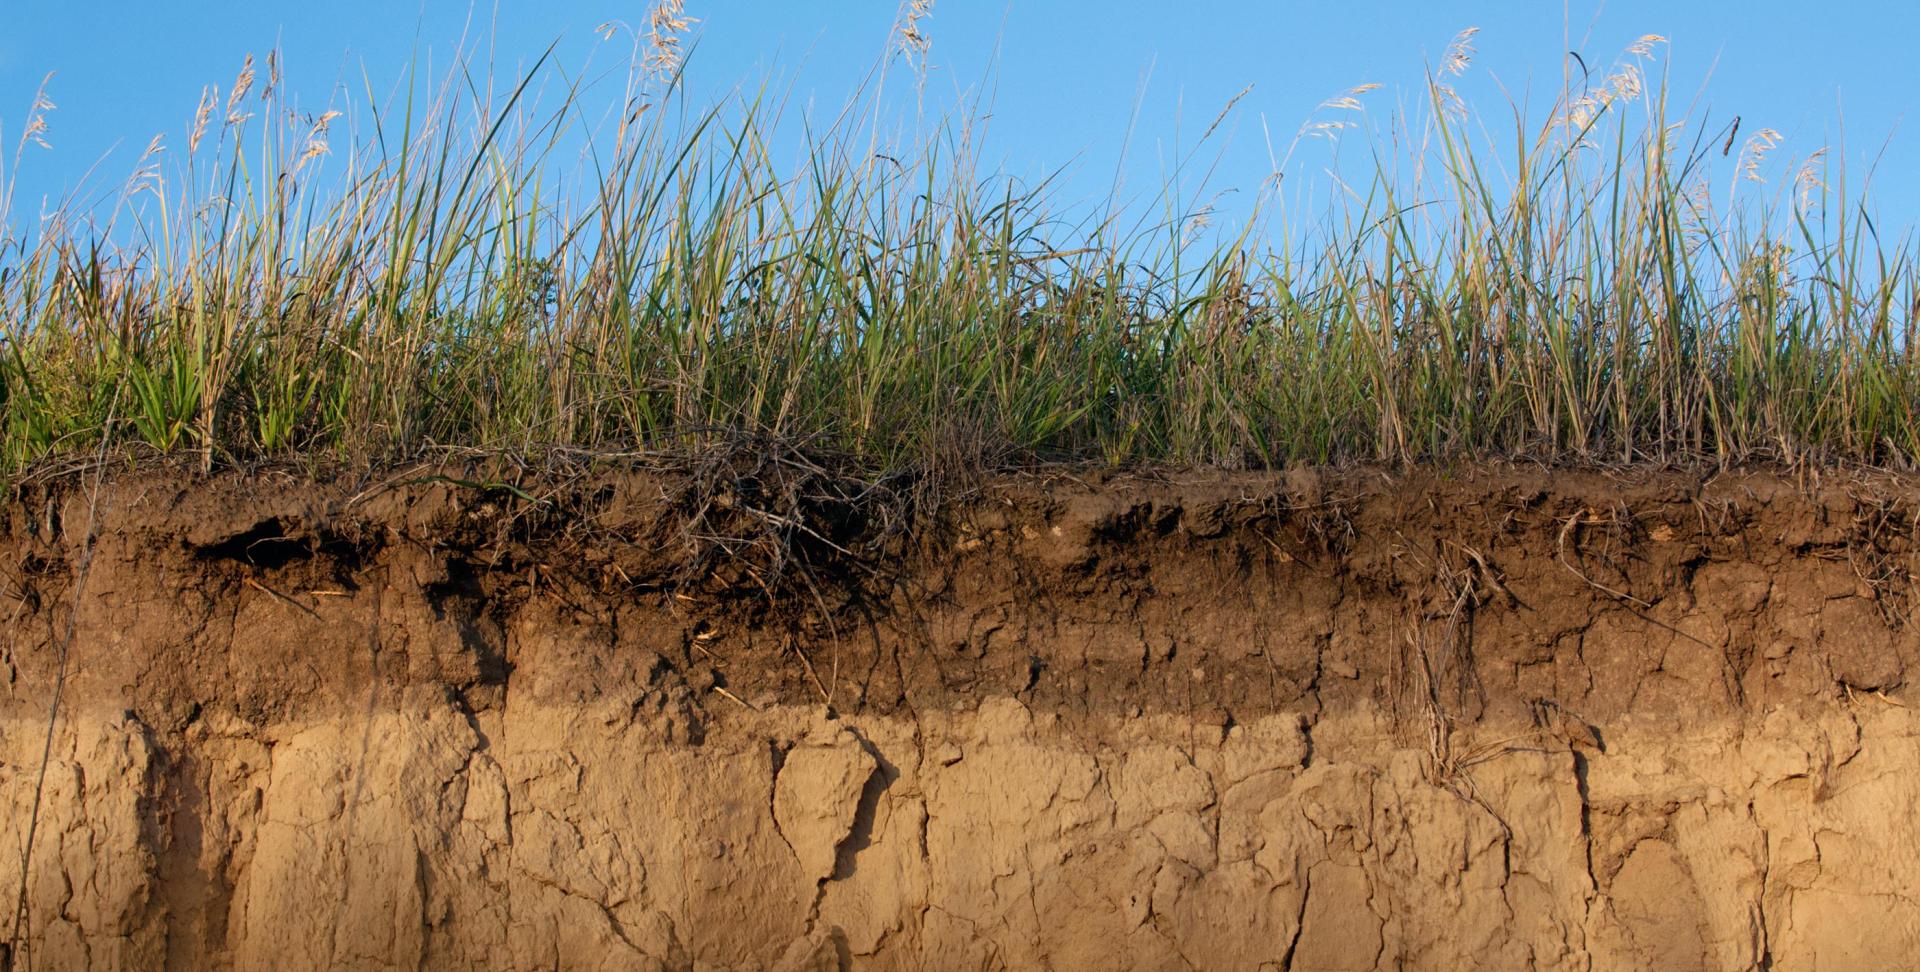 A cross section of dry soil, representing soil moisture.